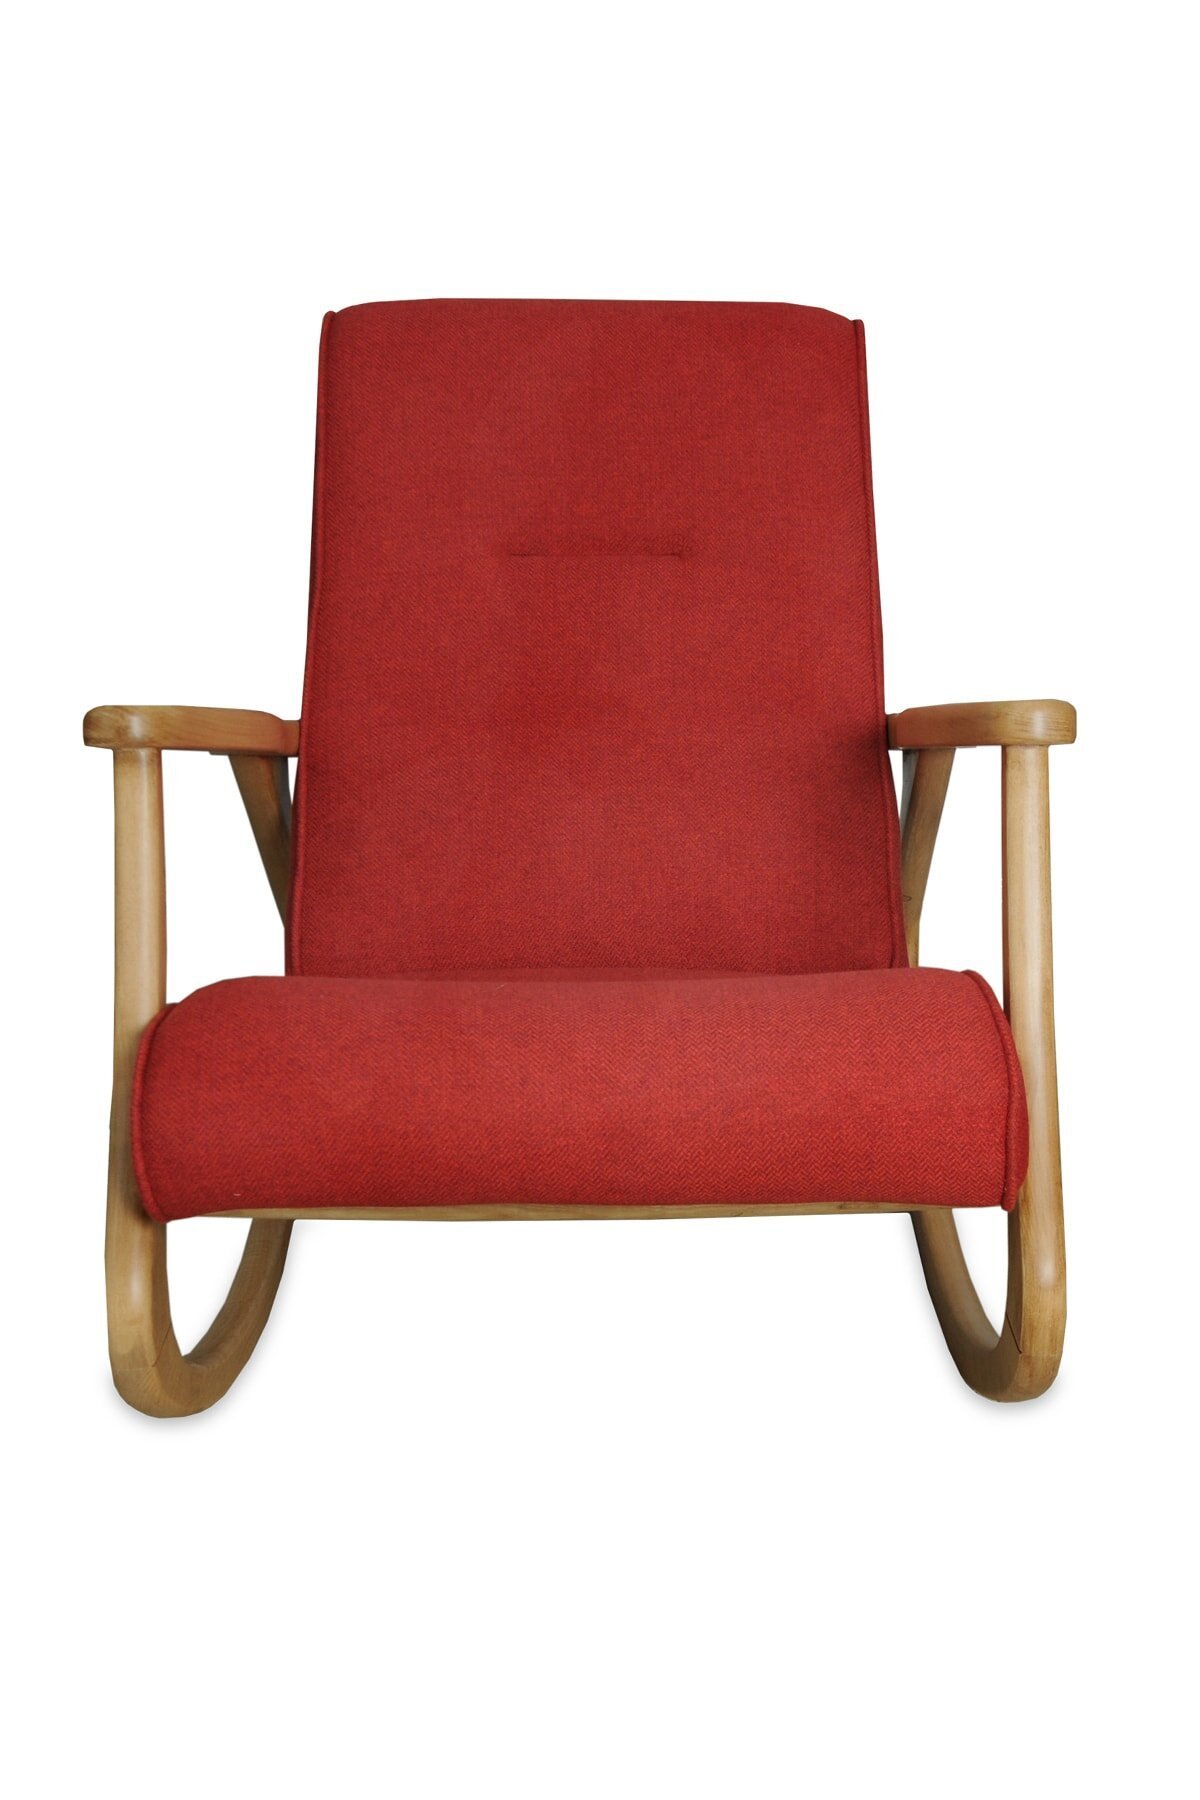 Asedia Ekol Naturel Kırmızı Renk Sallanan Sandalye